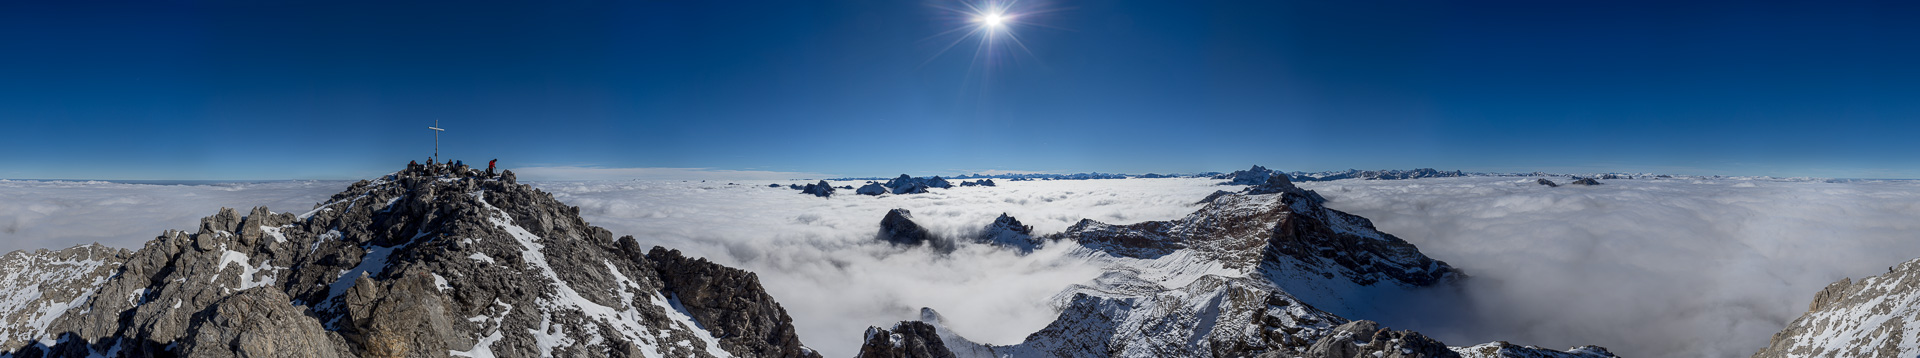 Wunderbares Gipfelpanorama mit Bernina-Blick hoch über den Wolken.